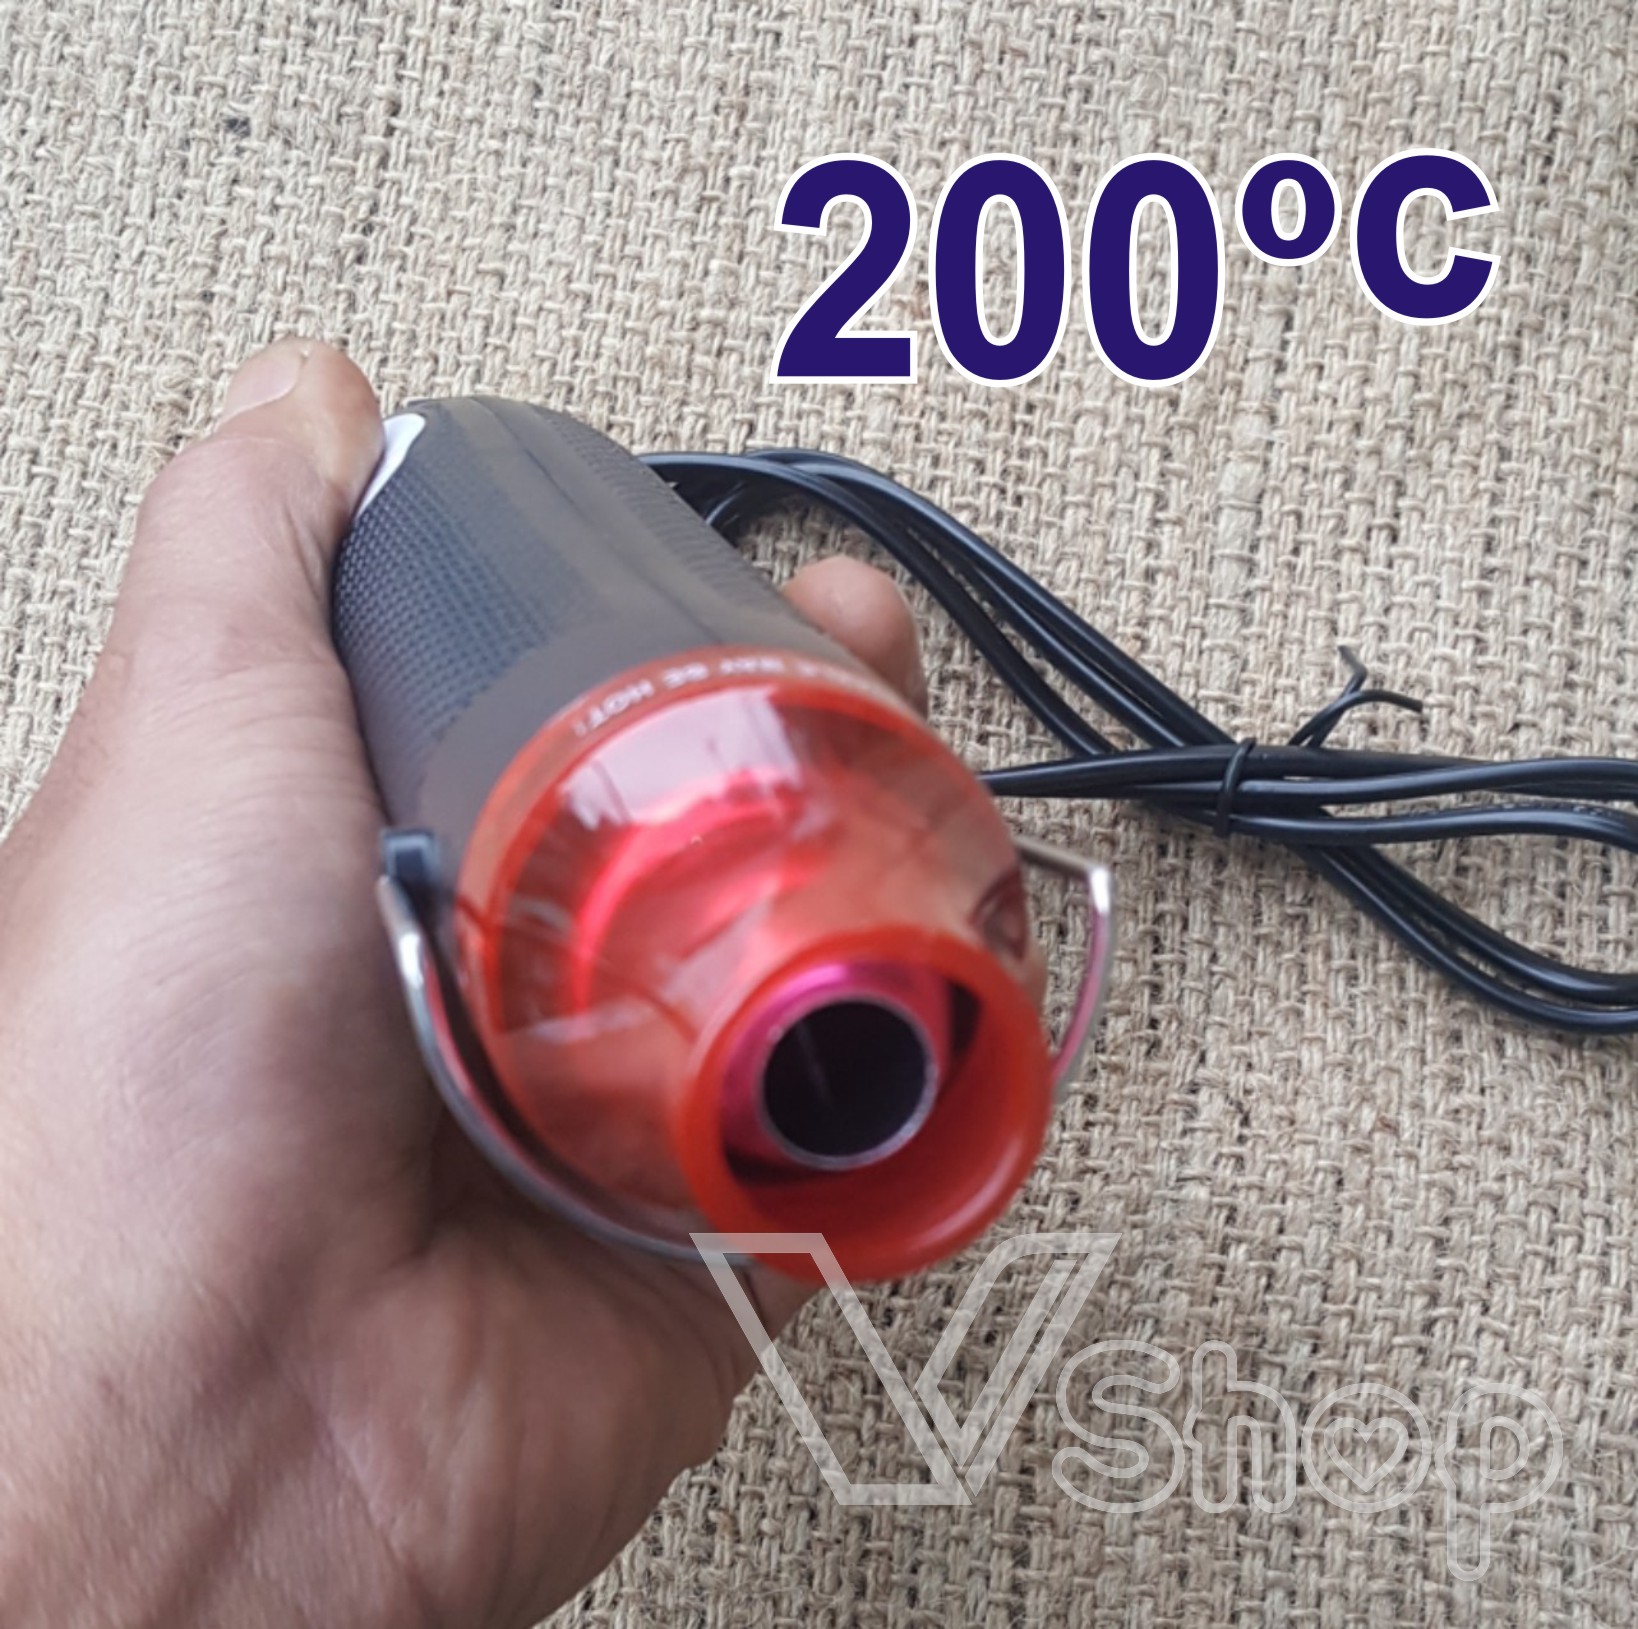 khò nhiệt mini, máy khò nóng dành cho thợ thủ công, handmade.